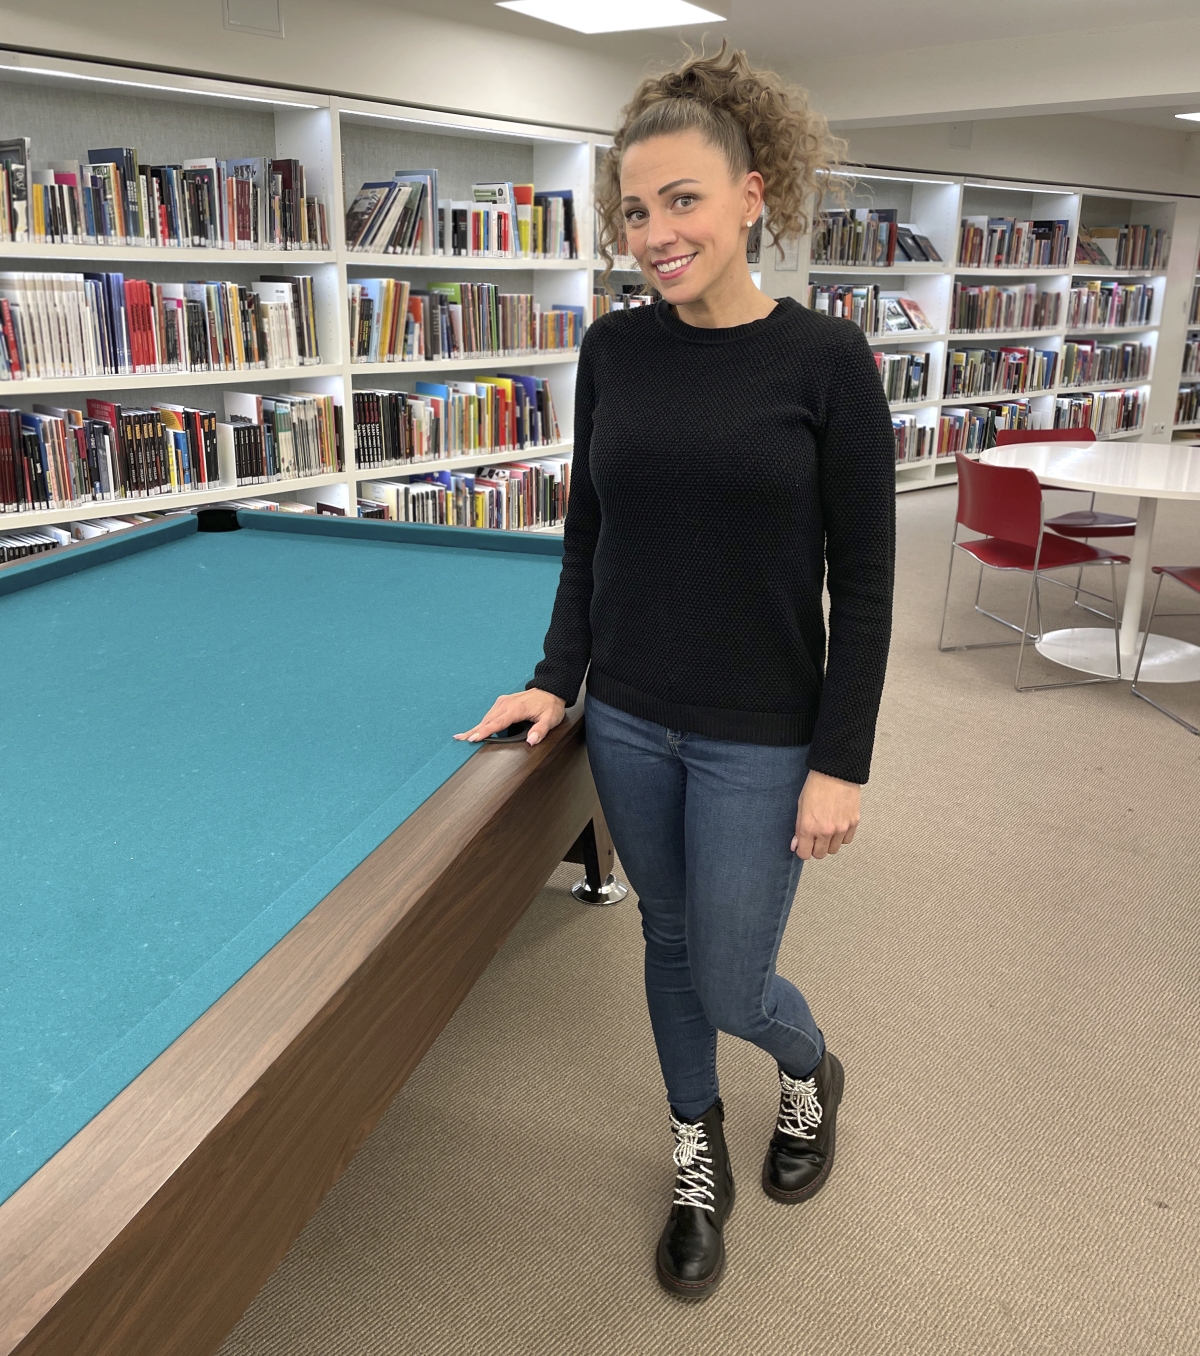 Nuoriso-ohjaaja Katja Luoma esittelee Liiverin rahoituksen avulla kirjastolle hankittua biljardipöytää.